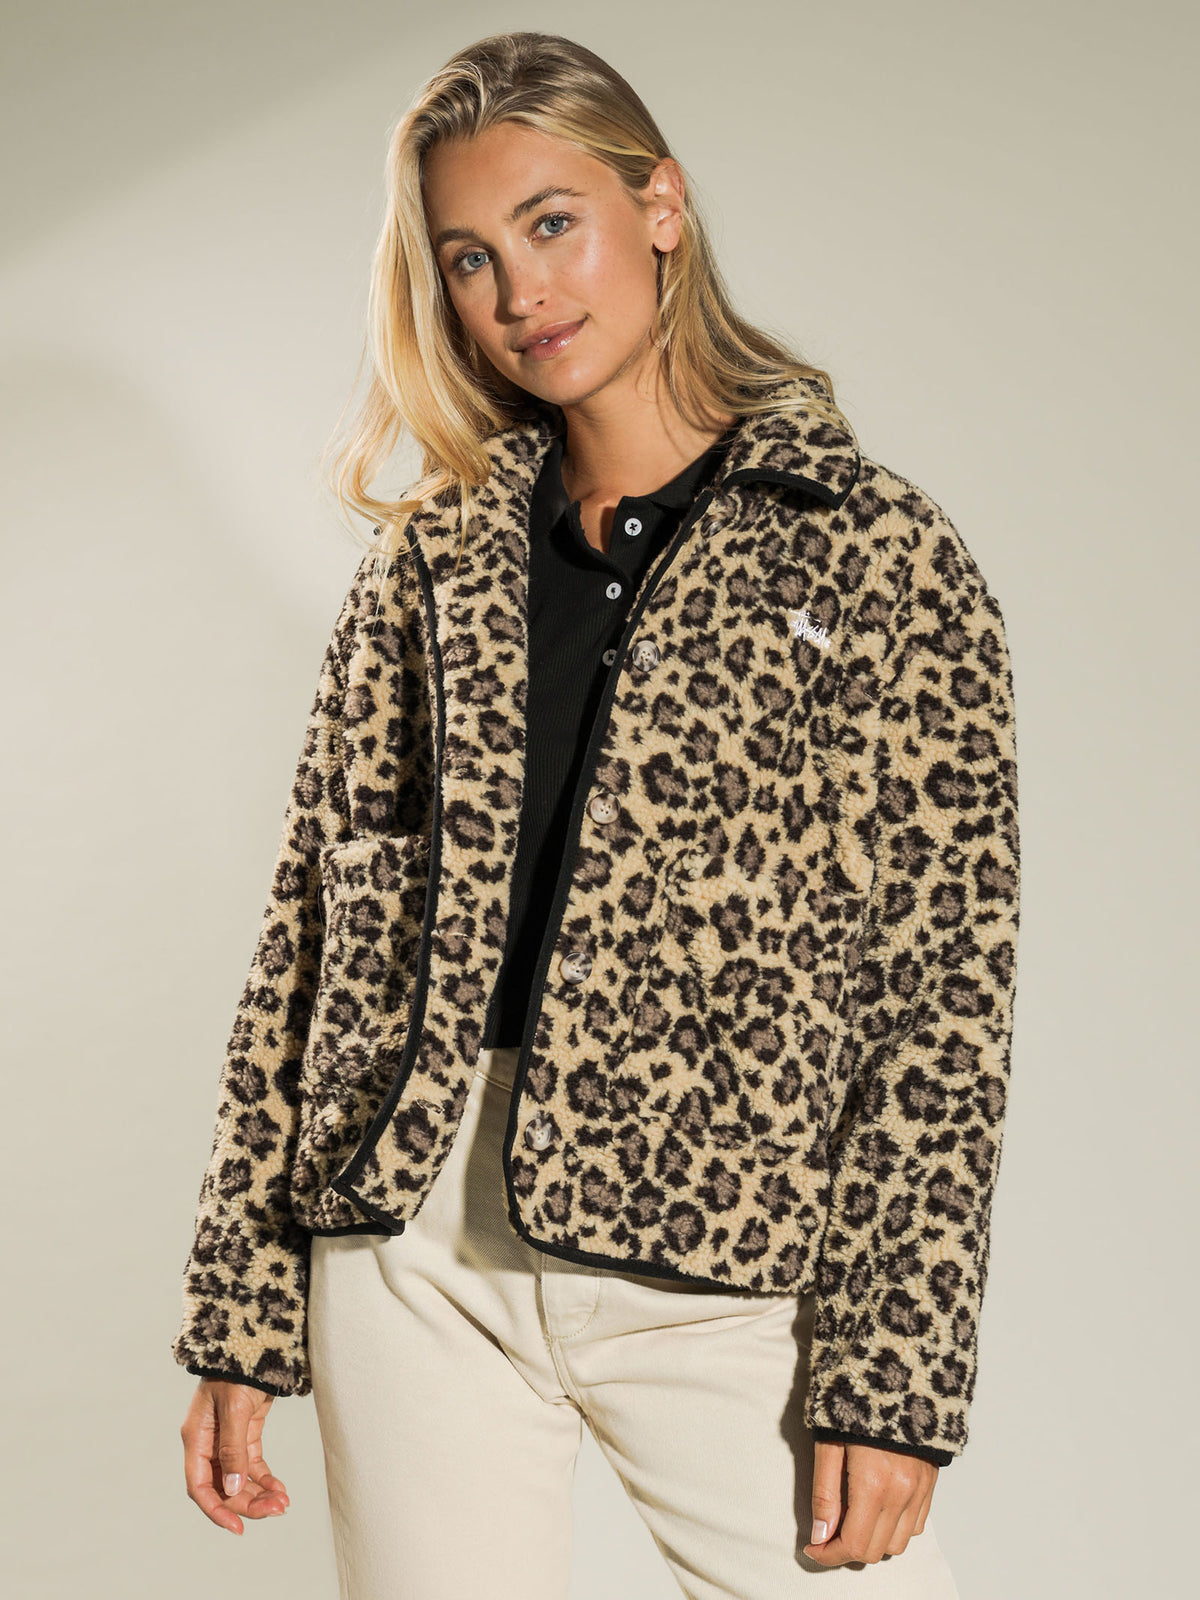 Graffiti Sherpa Jacket in Leopard